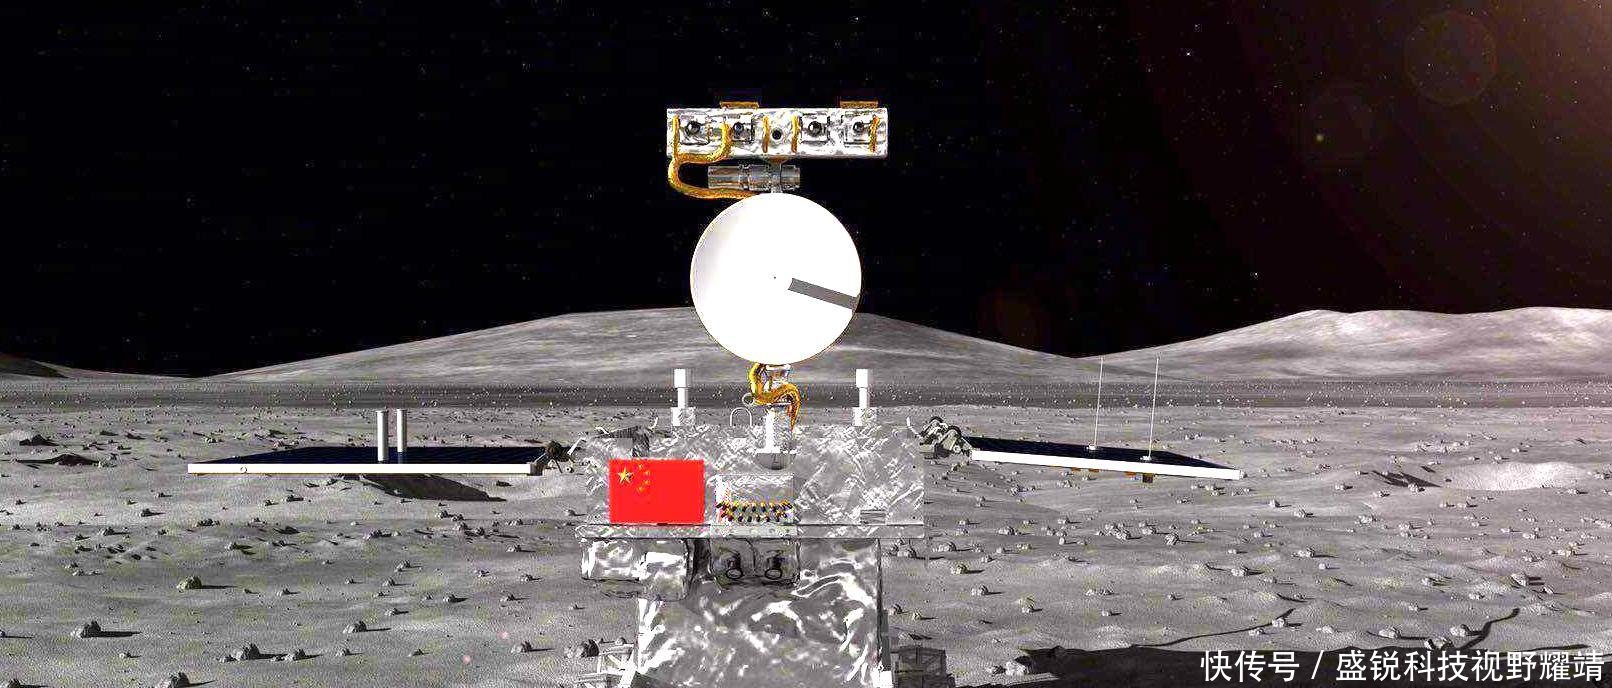 嫦娥4号被月球成功抓住, 完成登月路关键一步